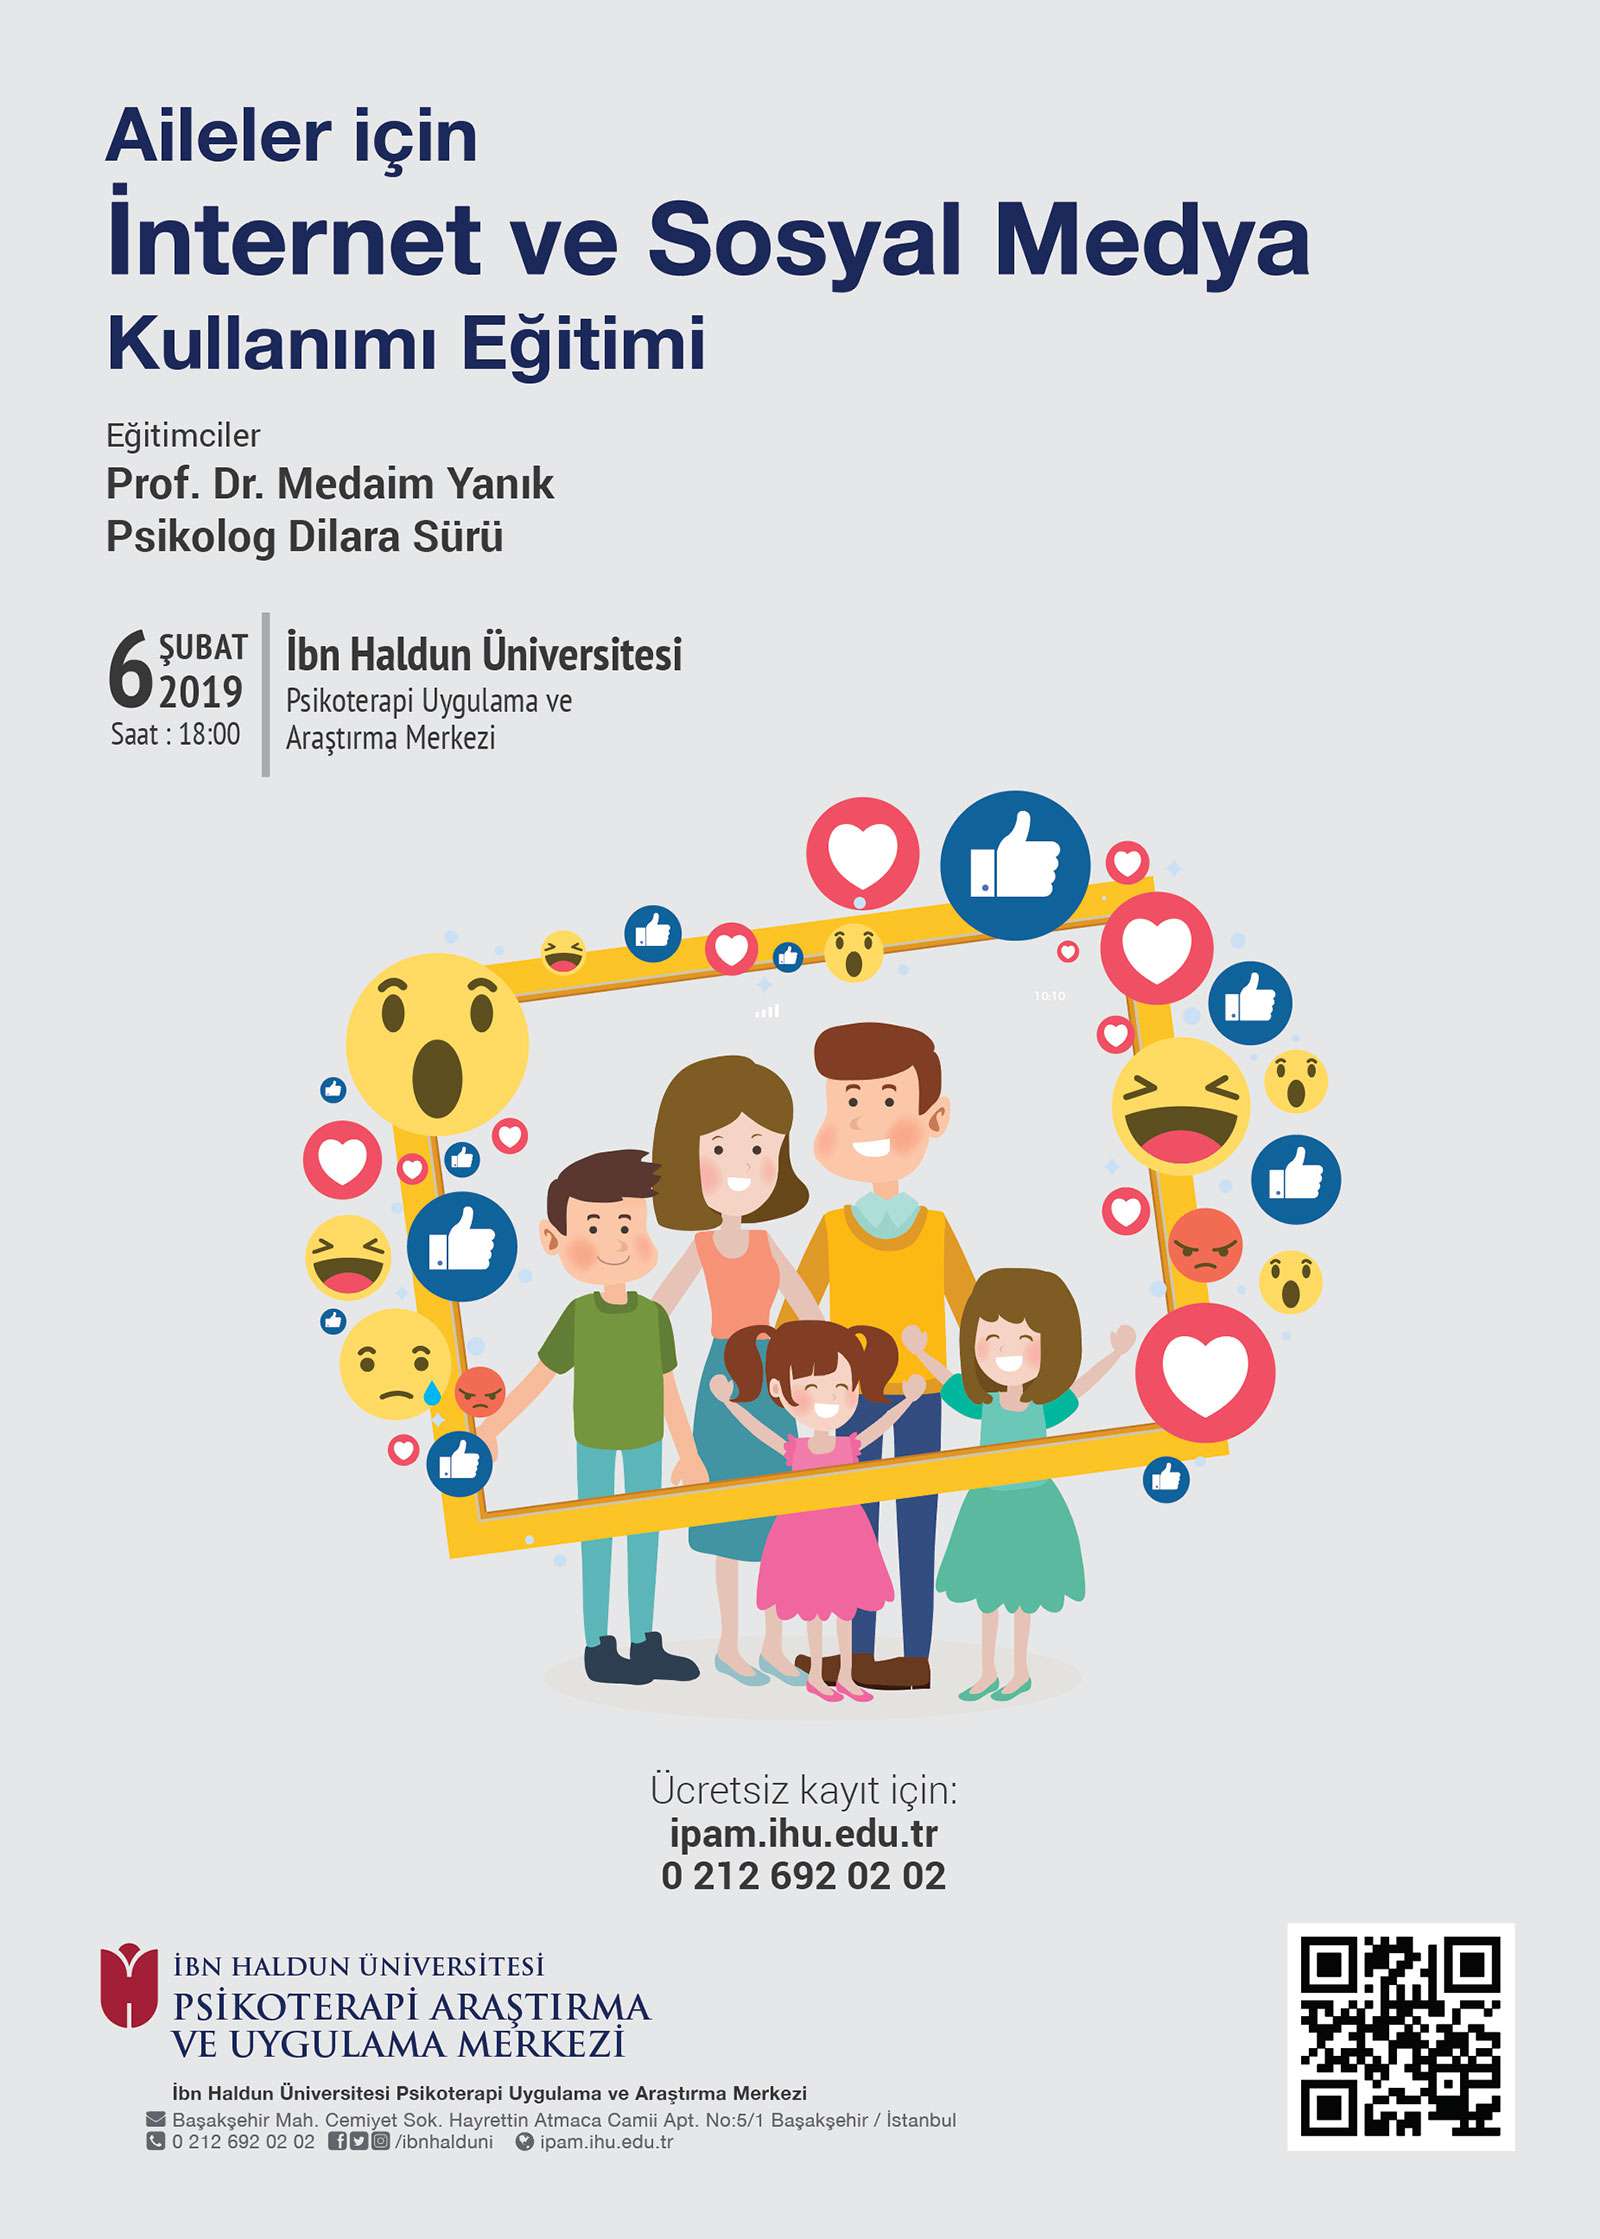 Aileler için İnternet ve Sosyal Medya Kullanımı Eğitimi